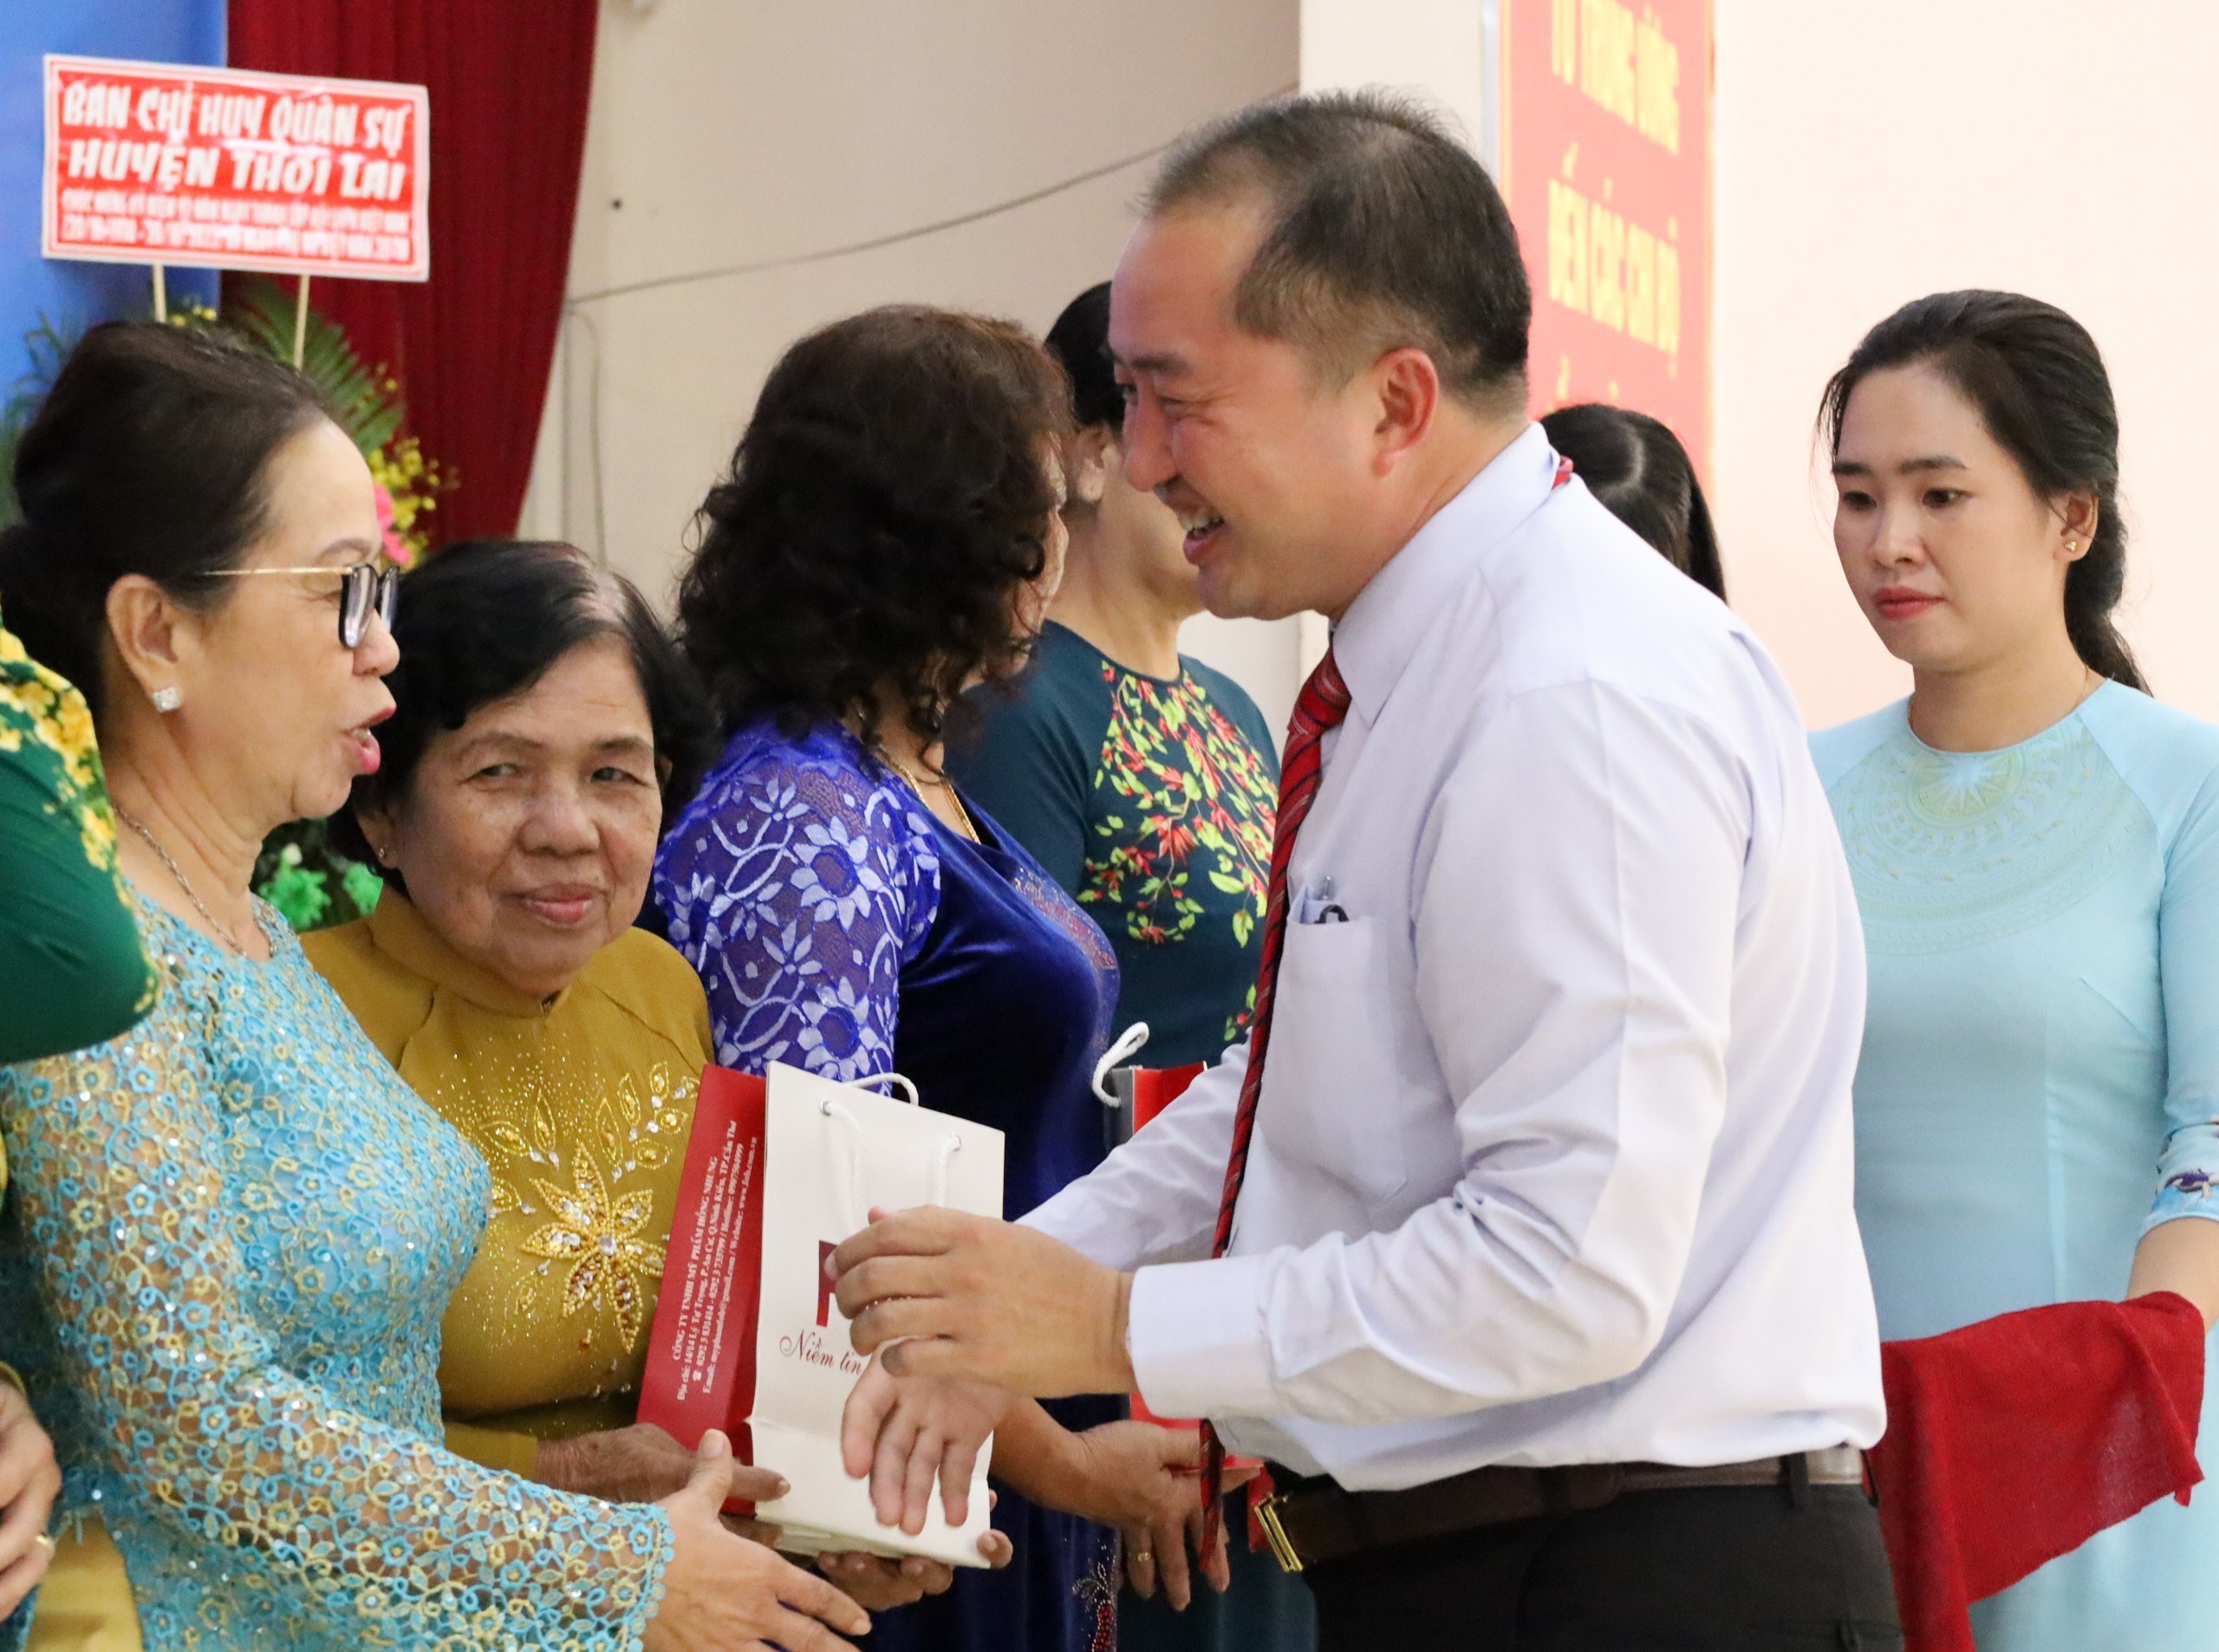 Ông Huỳnh Văn Tùng - Phó Bí thư thường trực Huyện ủy Thới Lai tặng quà cho lãnh đạo Hội cao niên qua các nhiệm kỳ.